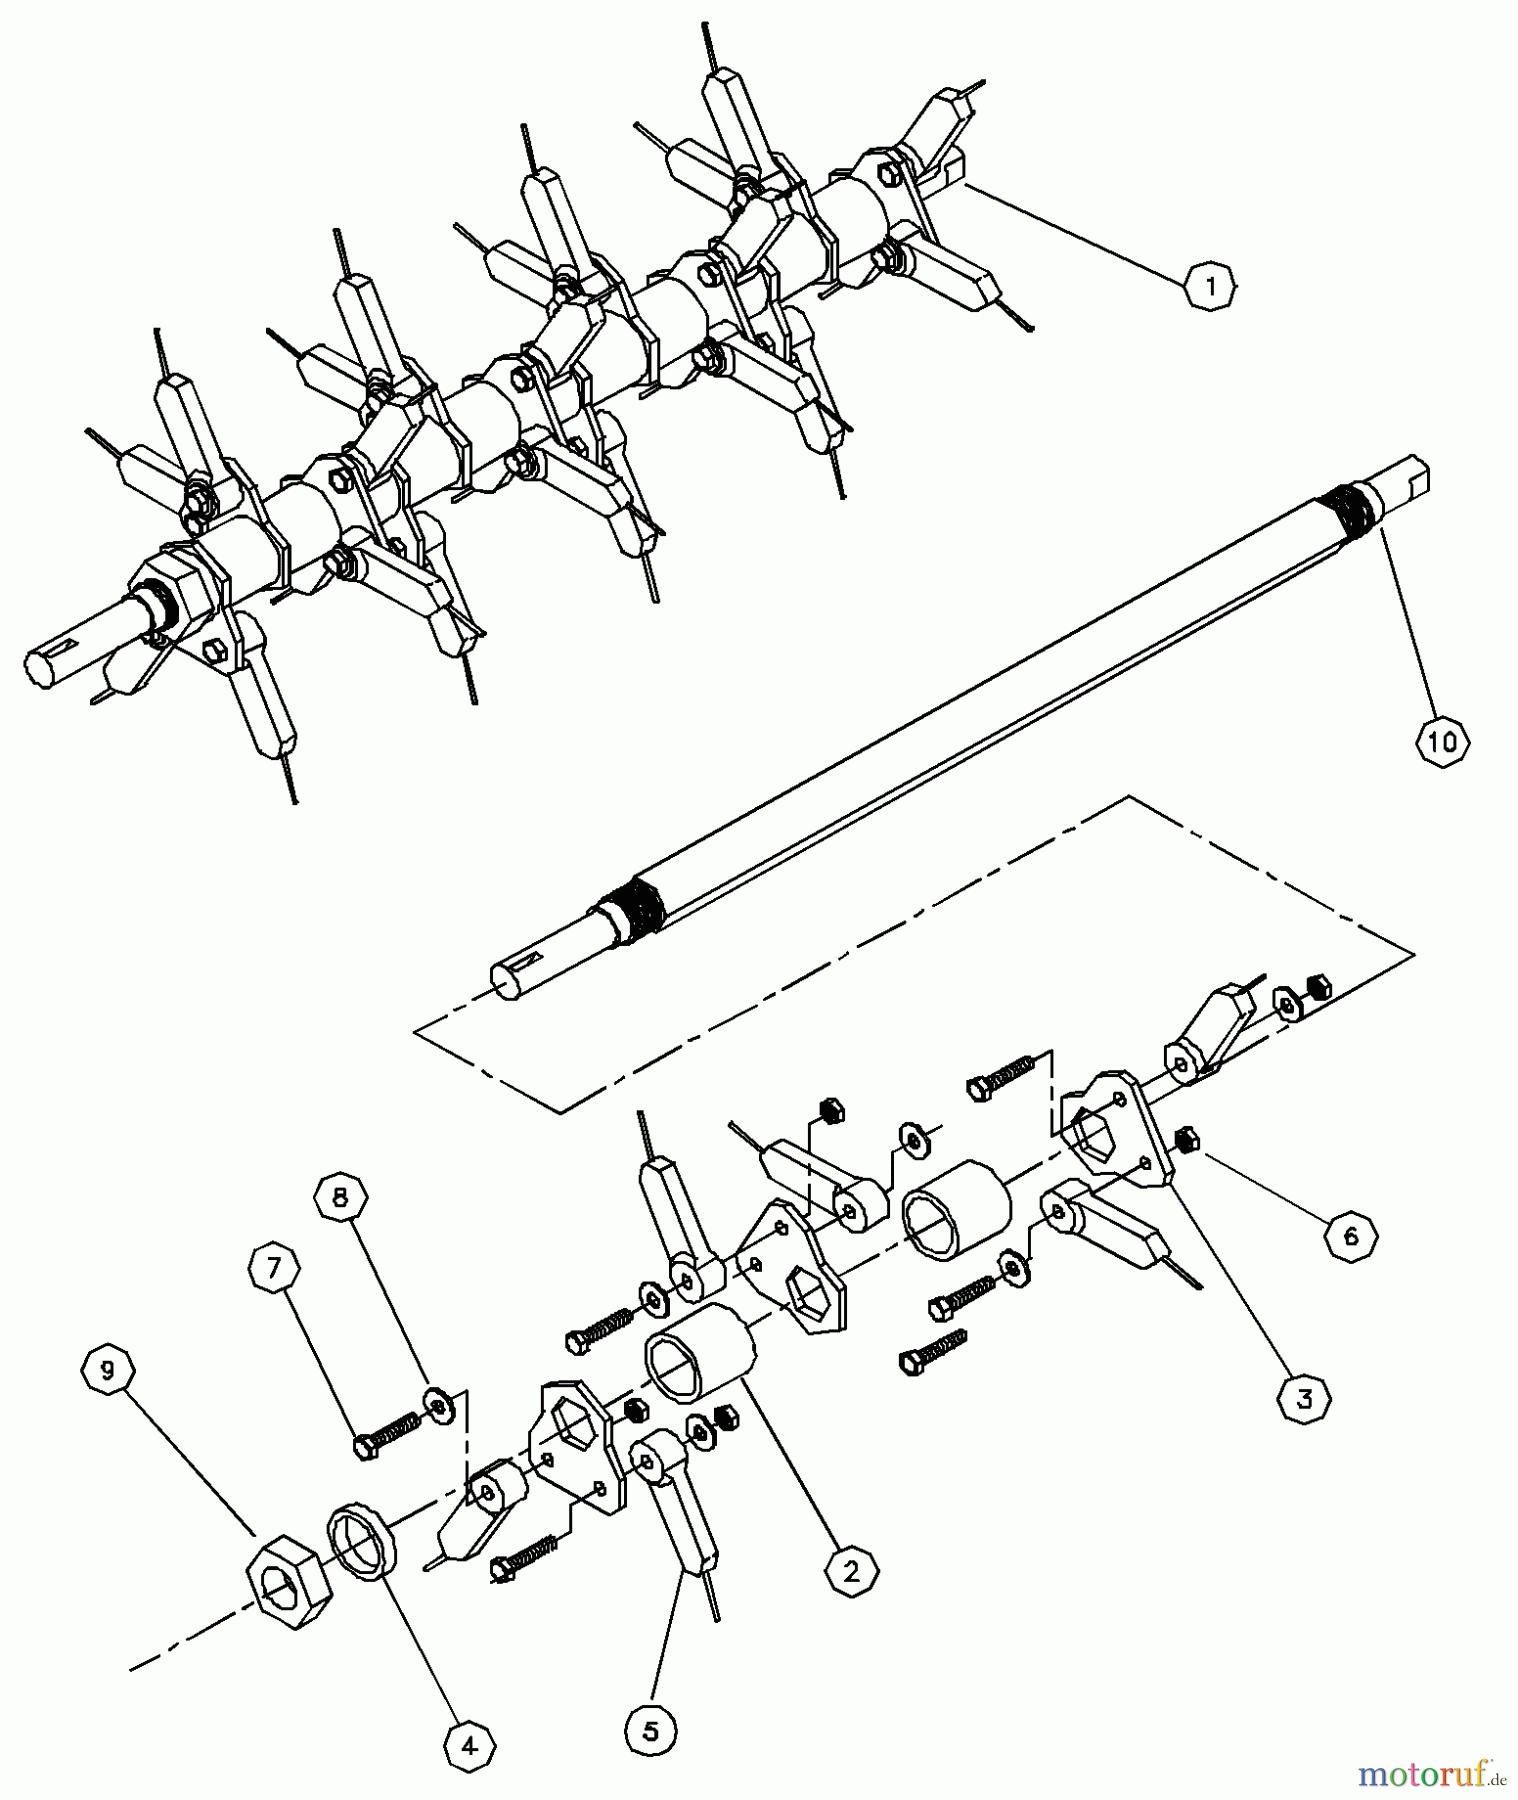  Husqvarna Belüfter / Vertikutierer / Rechen DT 20 A (968999190) - Husqvarna Dethatcher (2000-05 & After) Spring Tine Shaft Assembly